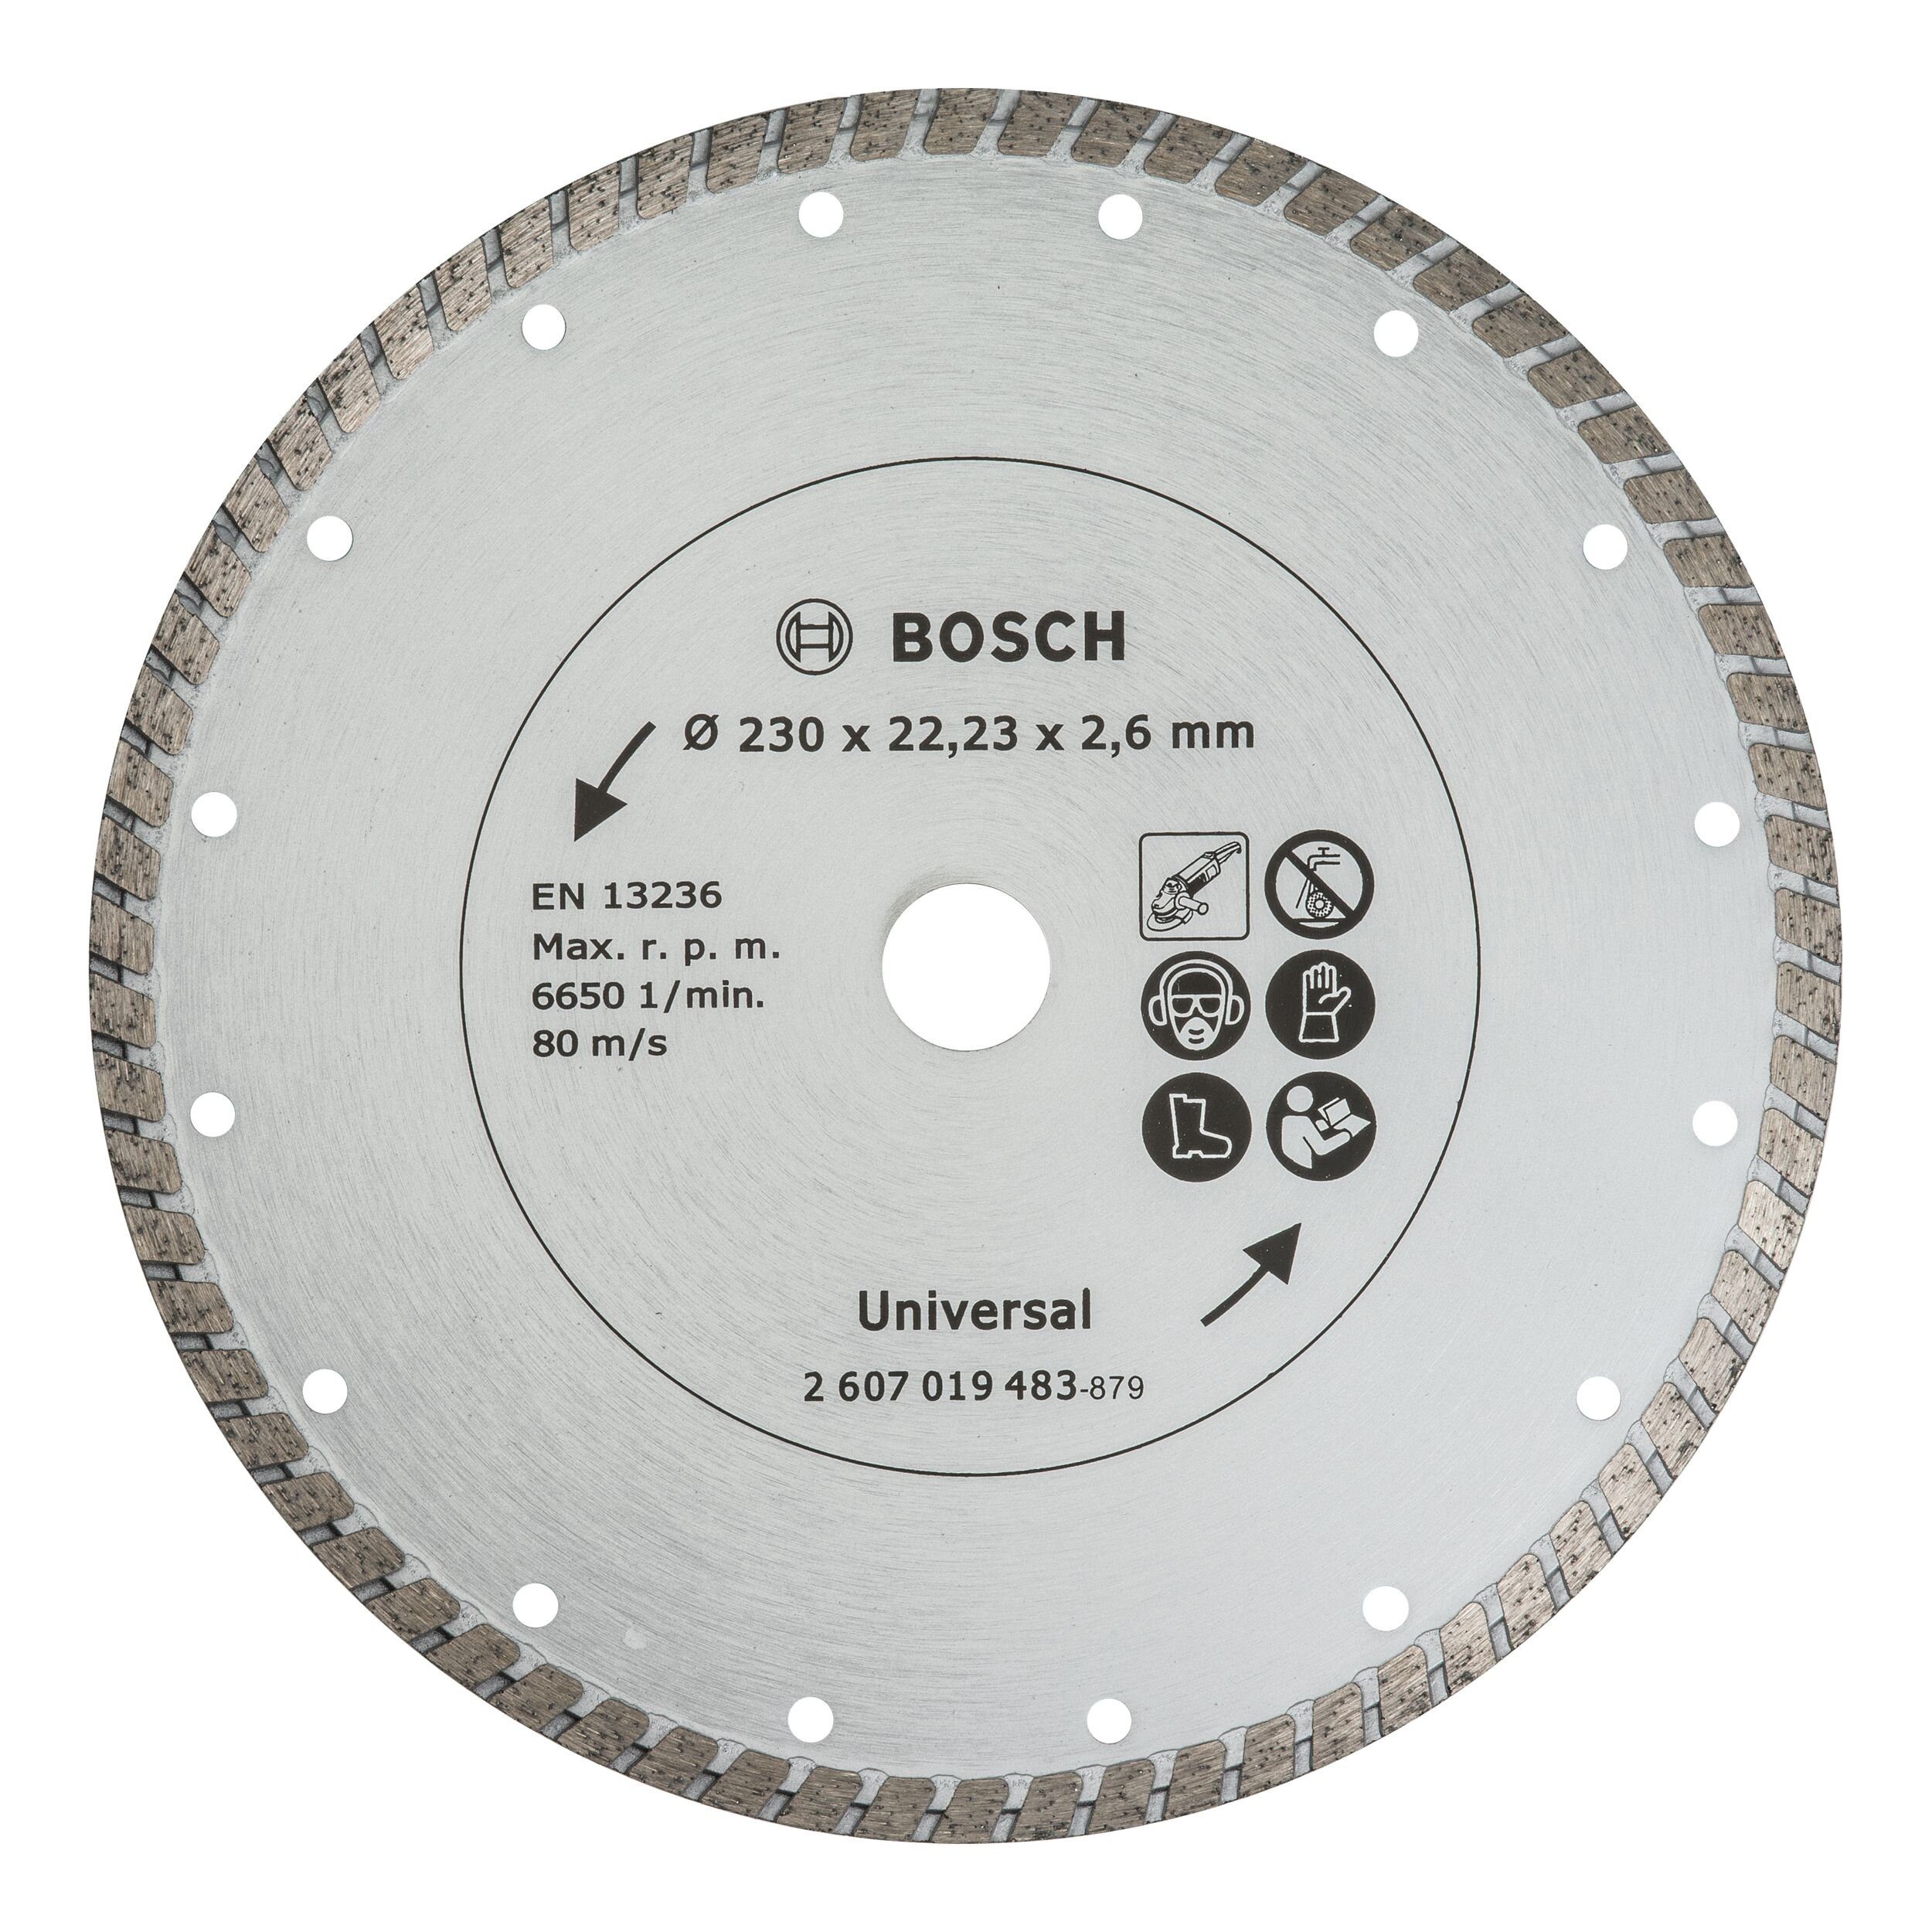 Bosch Accessories BOSCH Trennscheibe, Turbo Diamanttrennscheibe - 230 mm